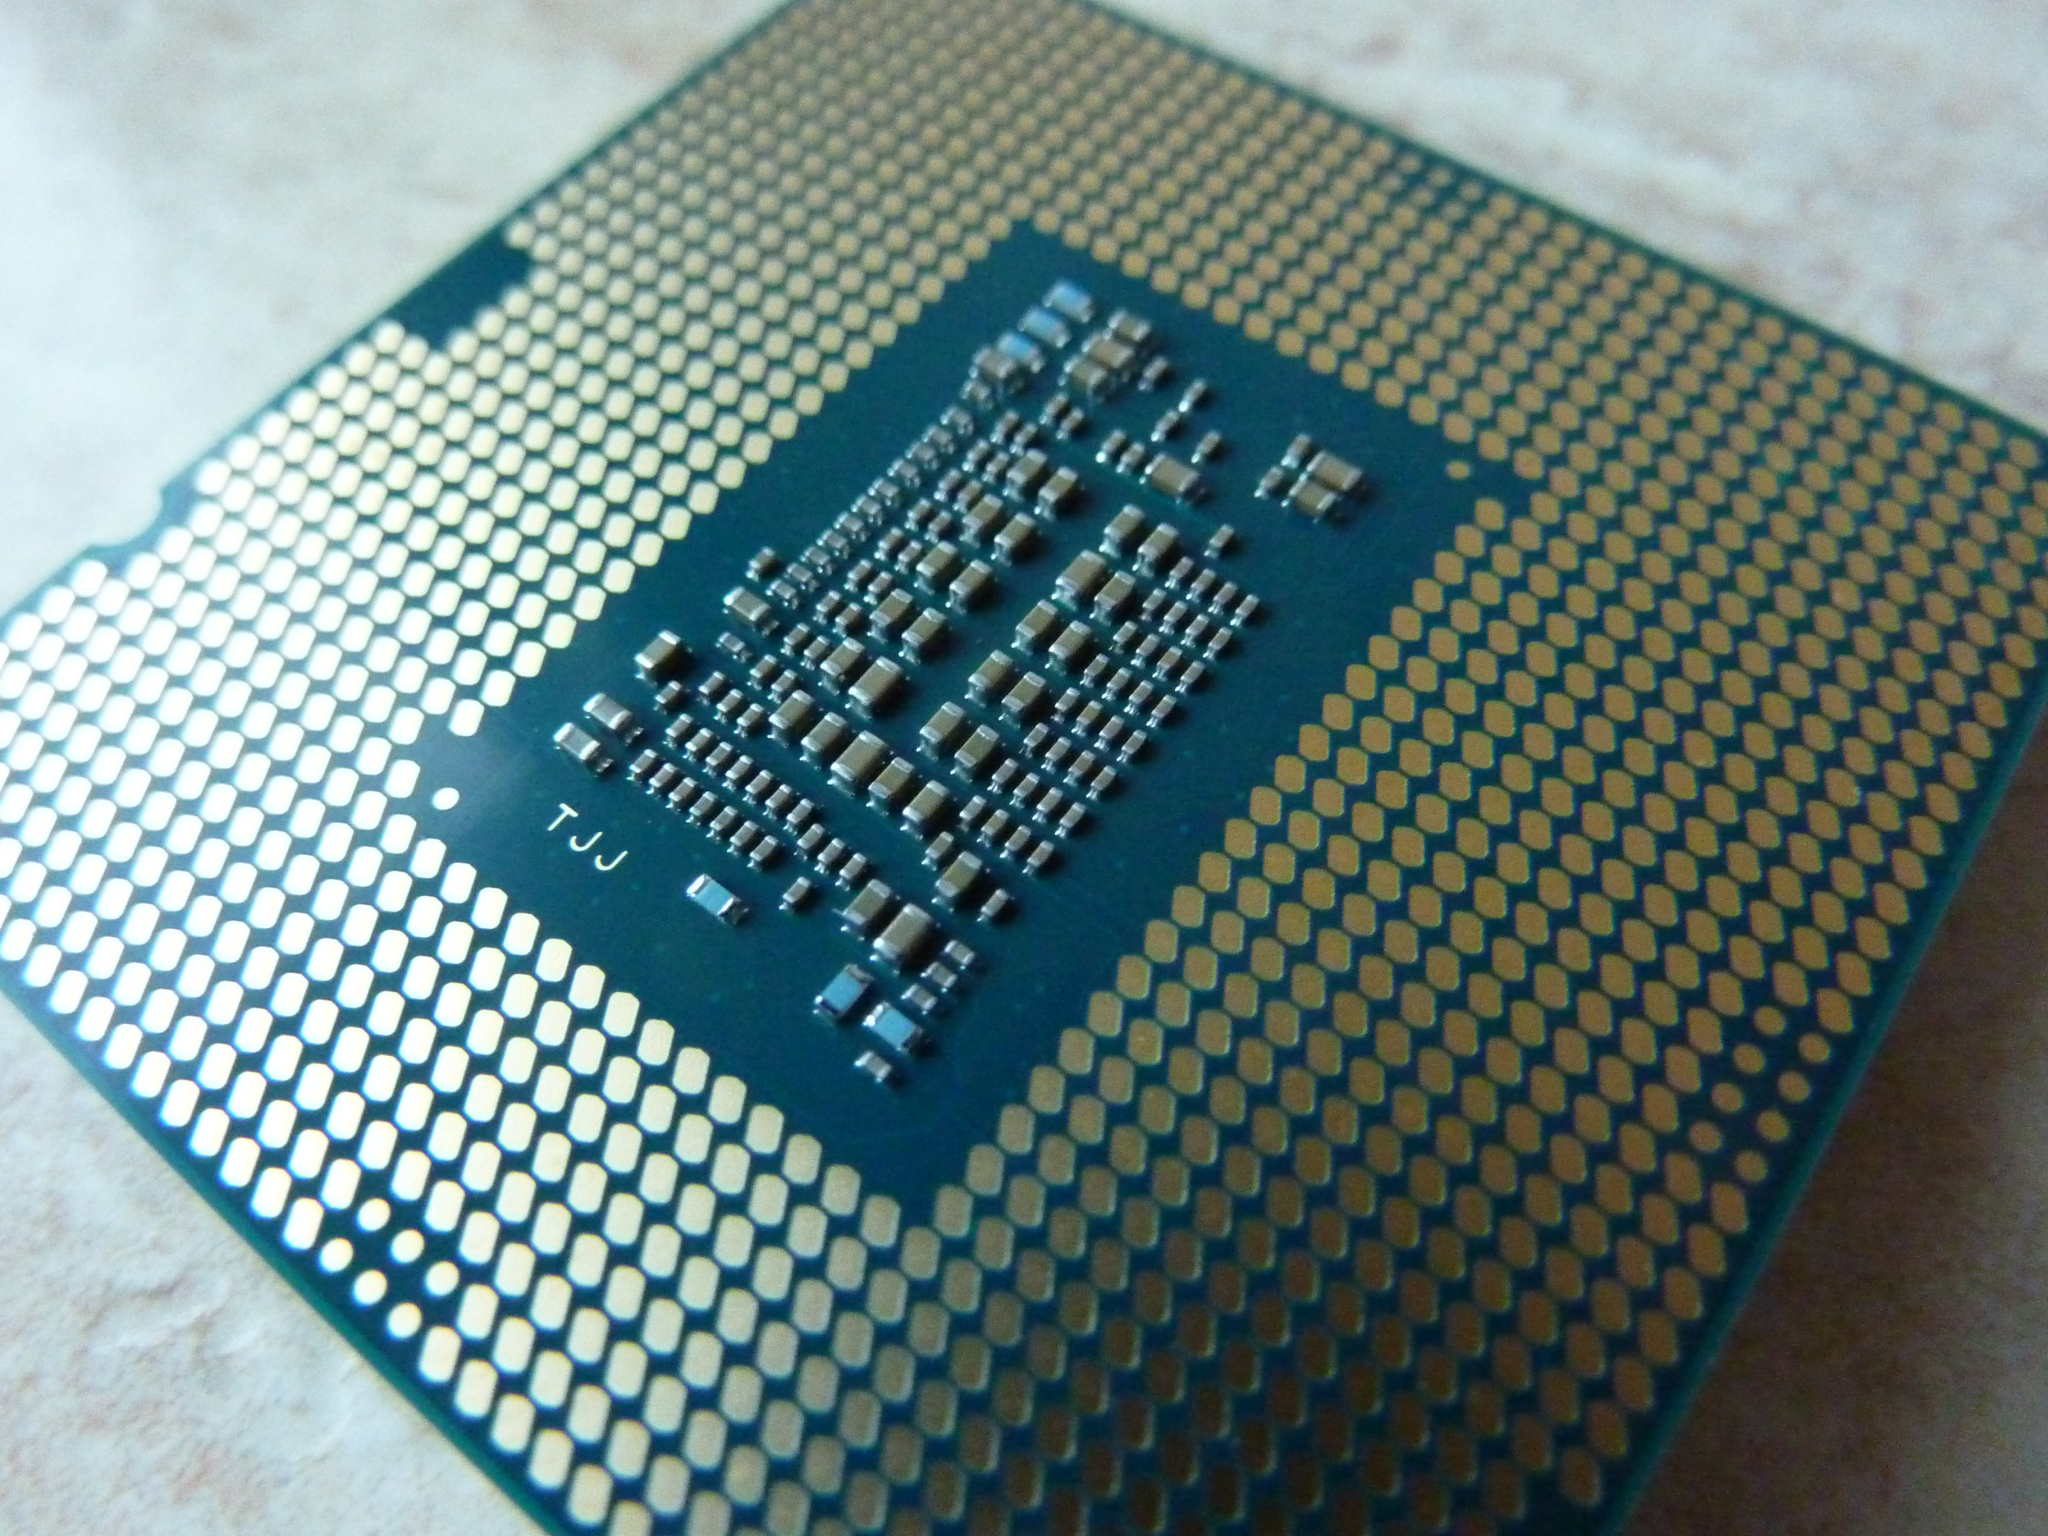 I5 10400f память. Процессор Intel Core i5-10400f. Core i5-10400f lga1200. Процессор Intel Core i5-10400f OEM. Intel Core i5 10400, LGA 1200, OEM.